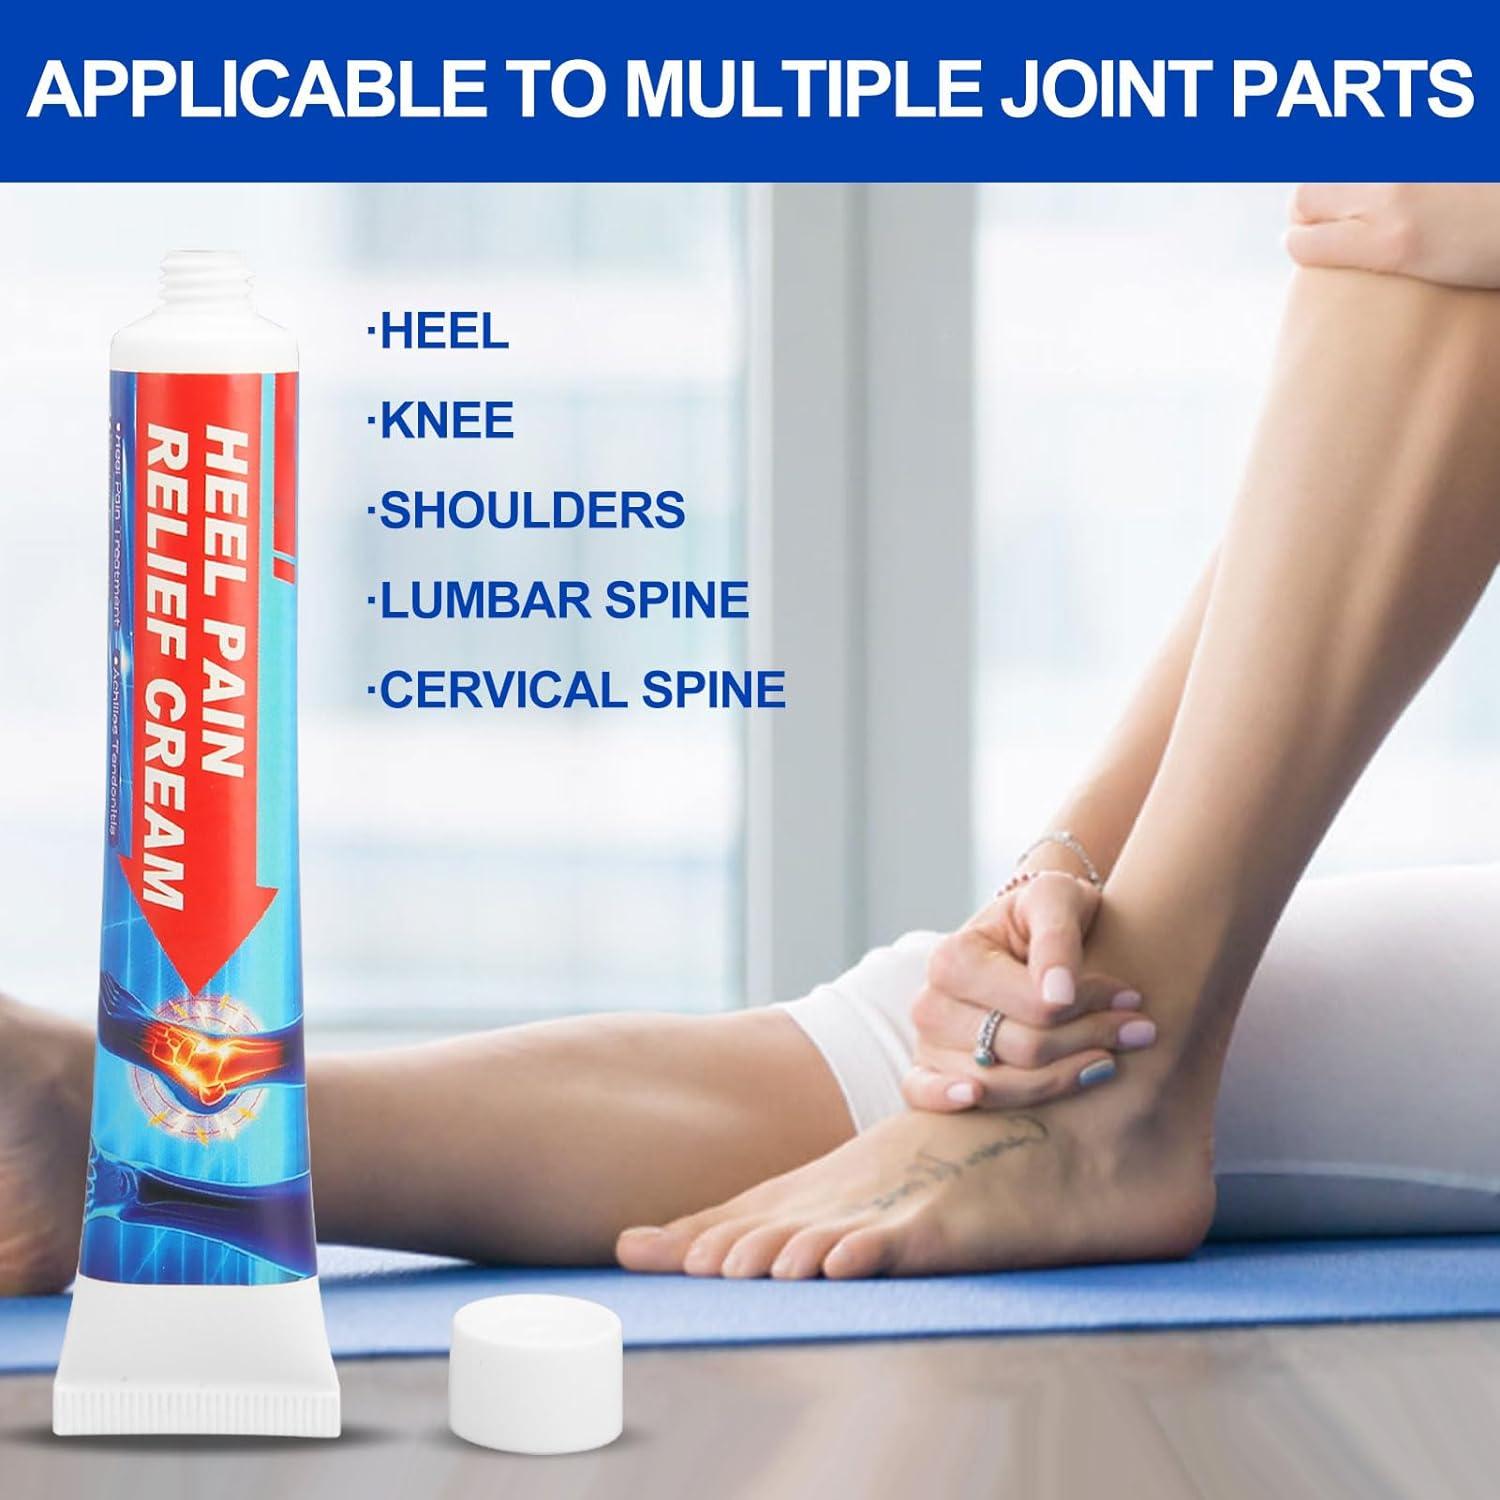 5 Best Heel Pain & Heel Spur Treatments - Ask Doctor Jo - YouTube